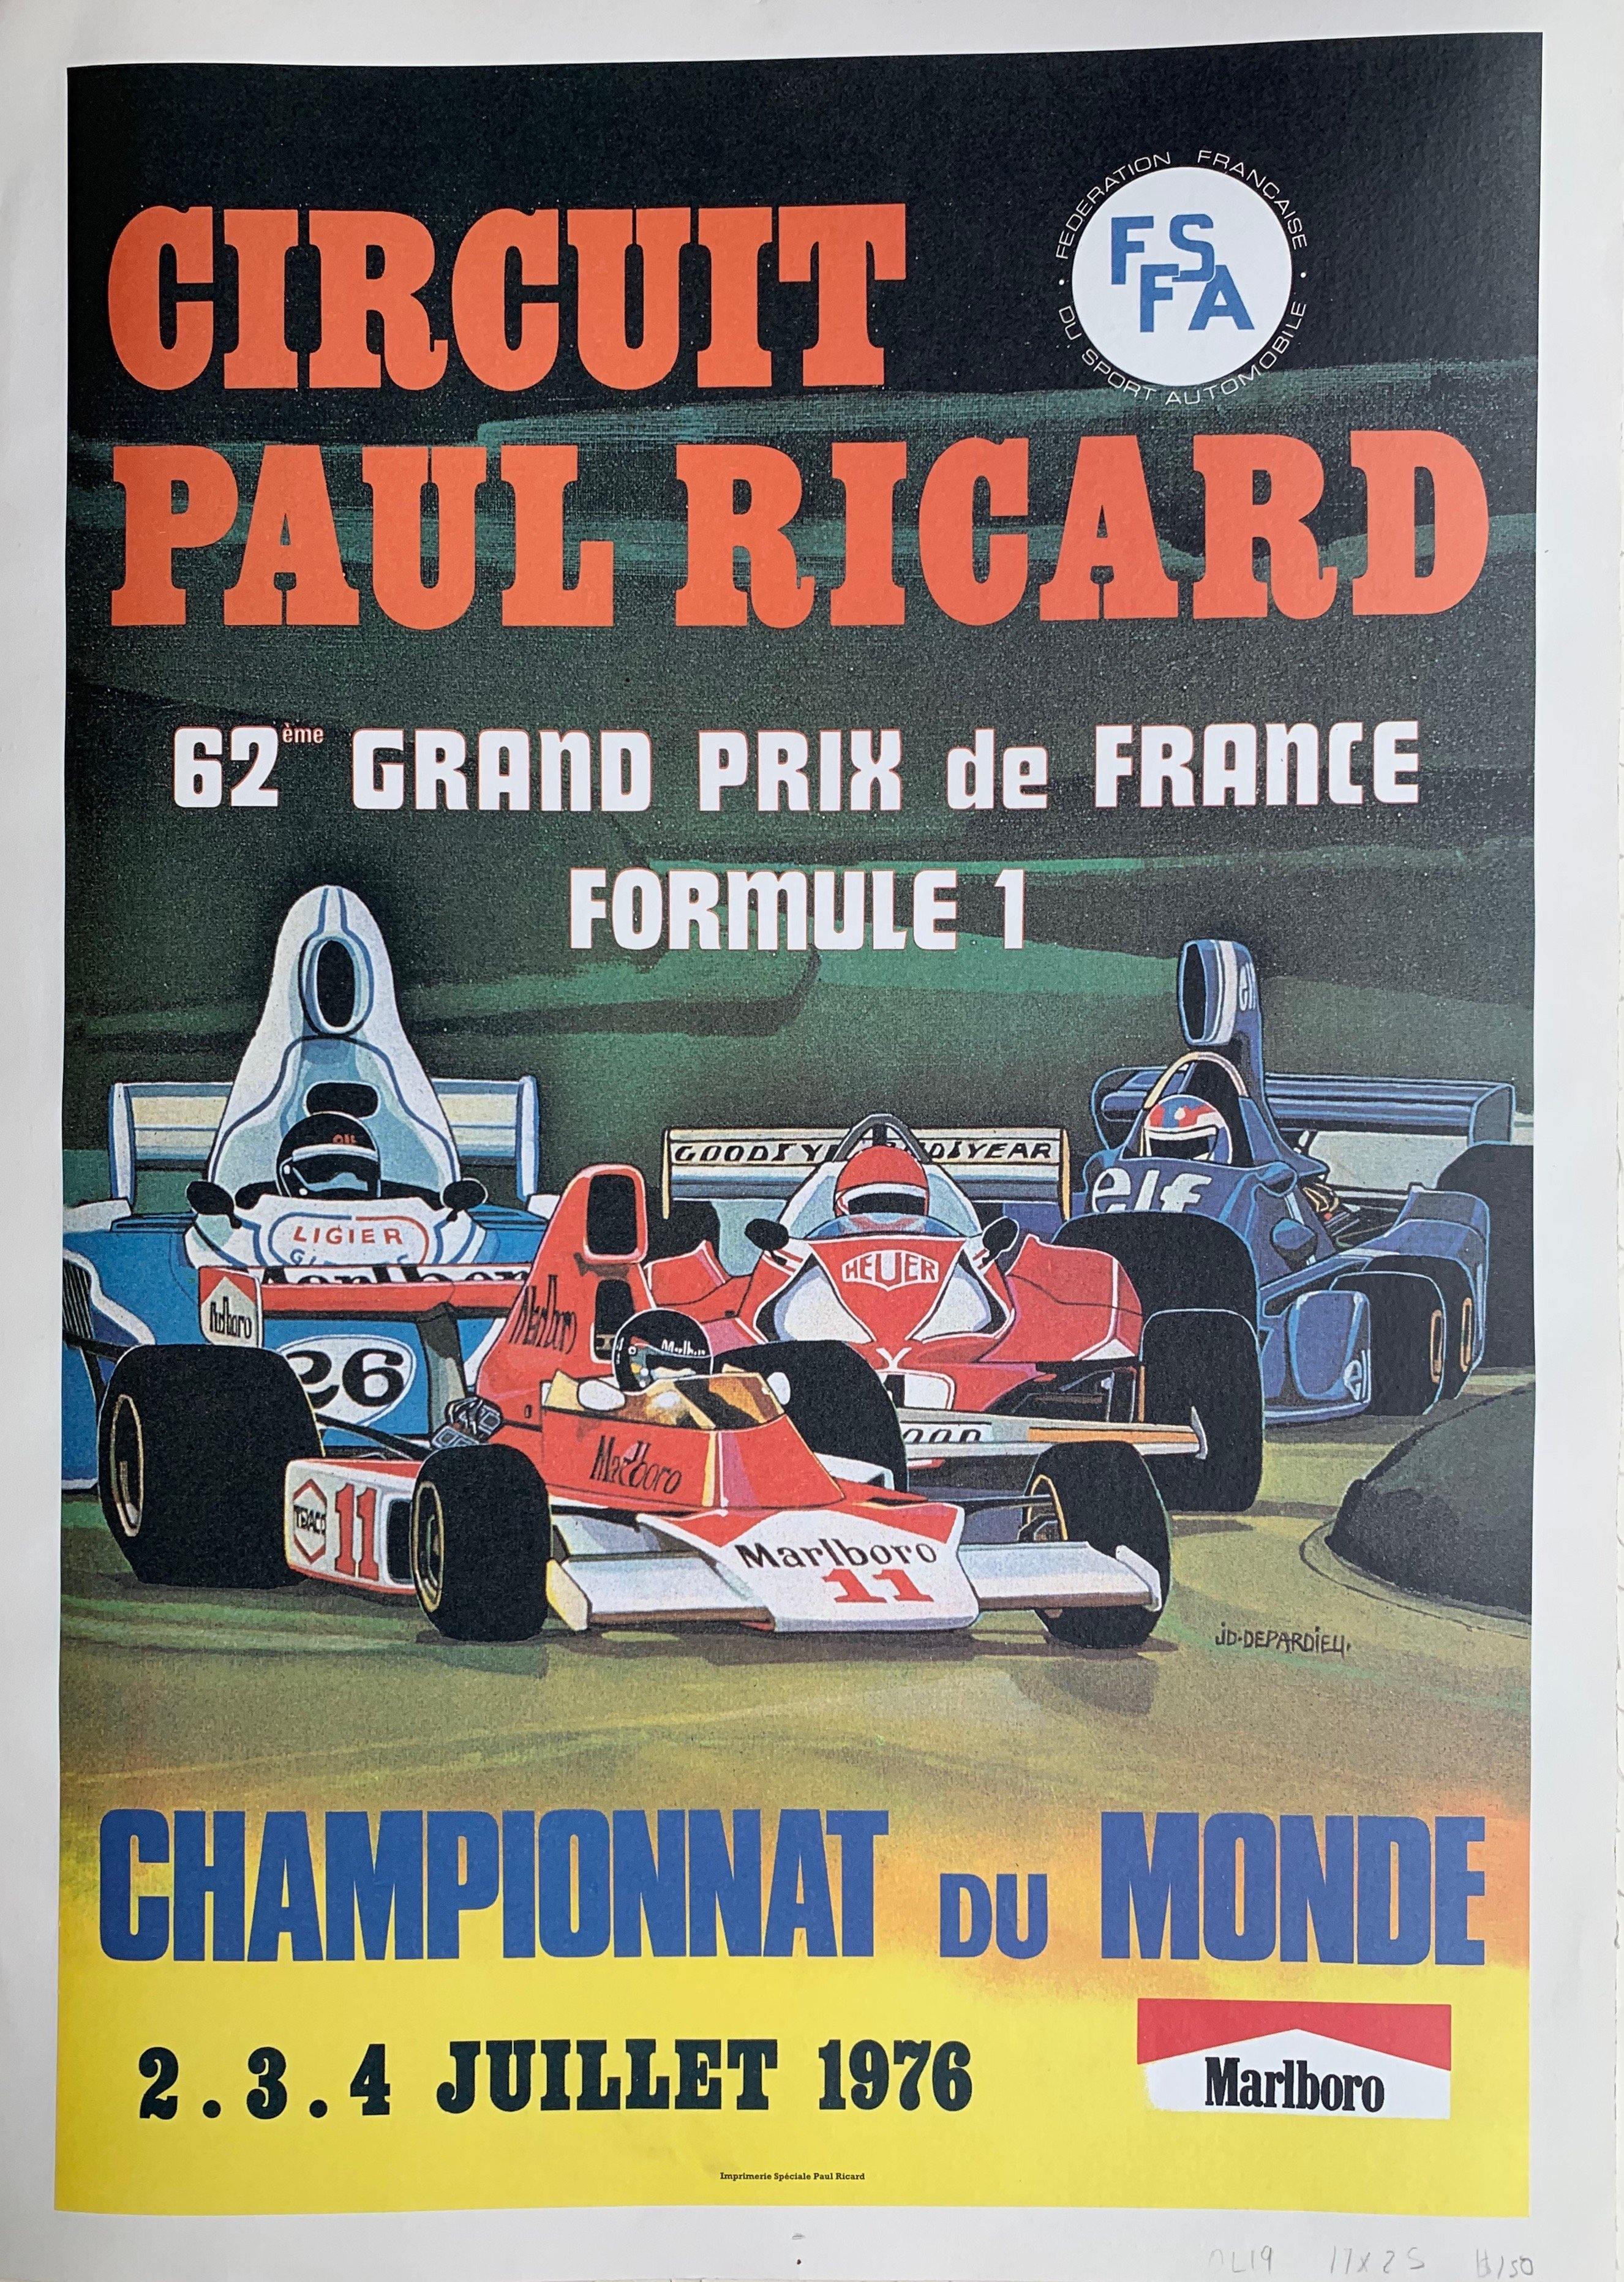 Circuit Paul Ricard -- 62eme Grand Prix de France Formule 1 -- Championnat  Du Monde -- Juillet 1976